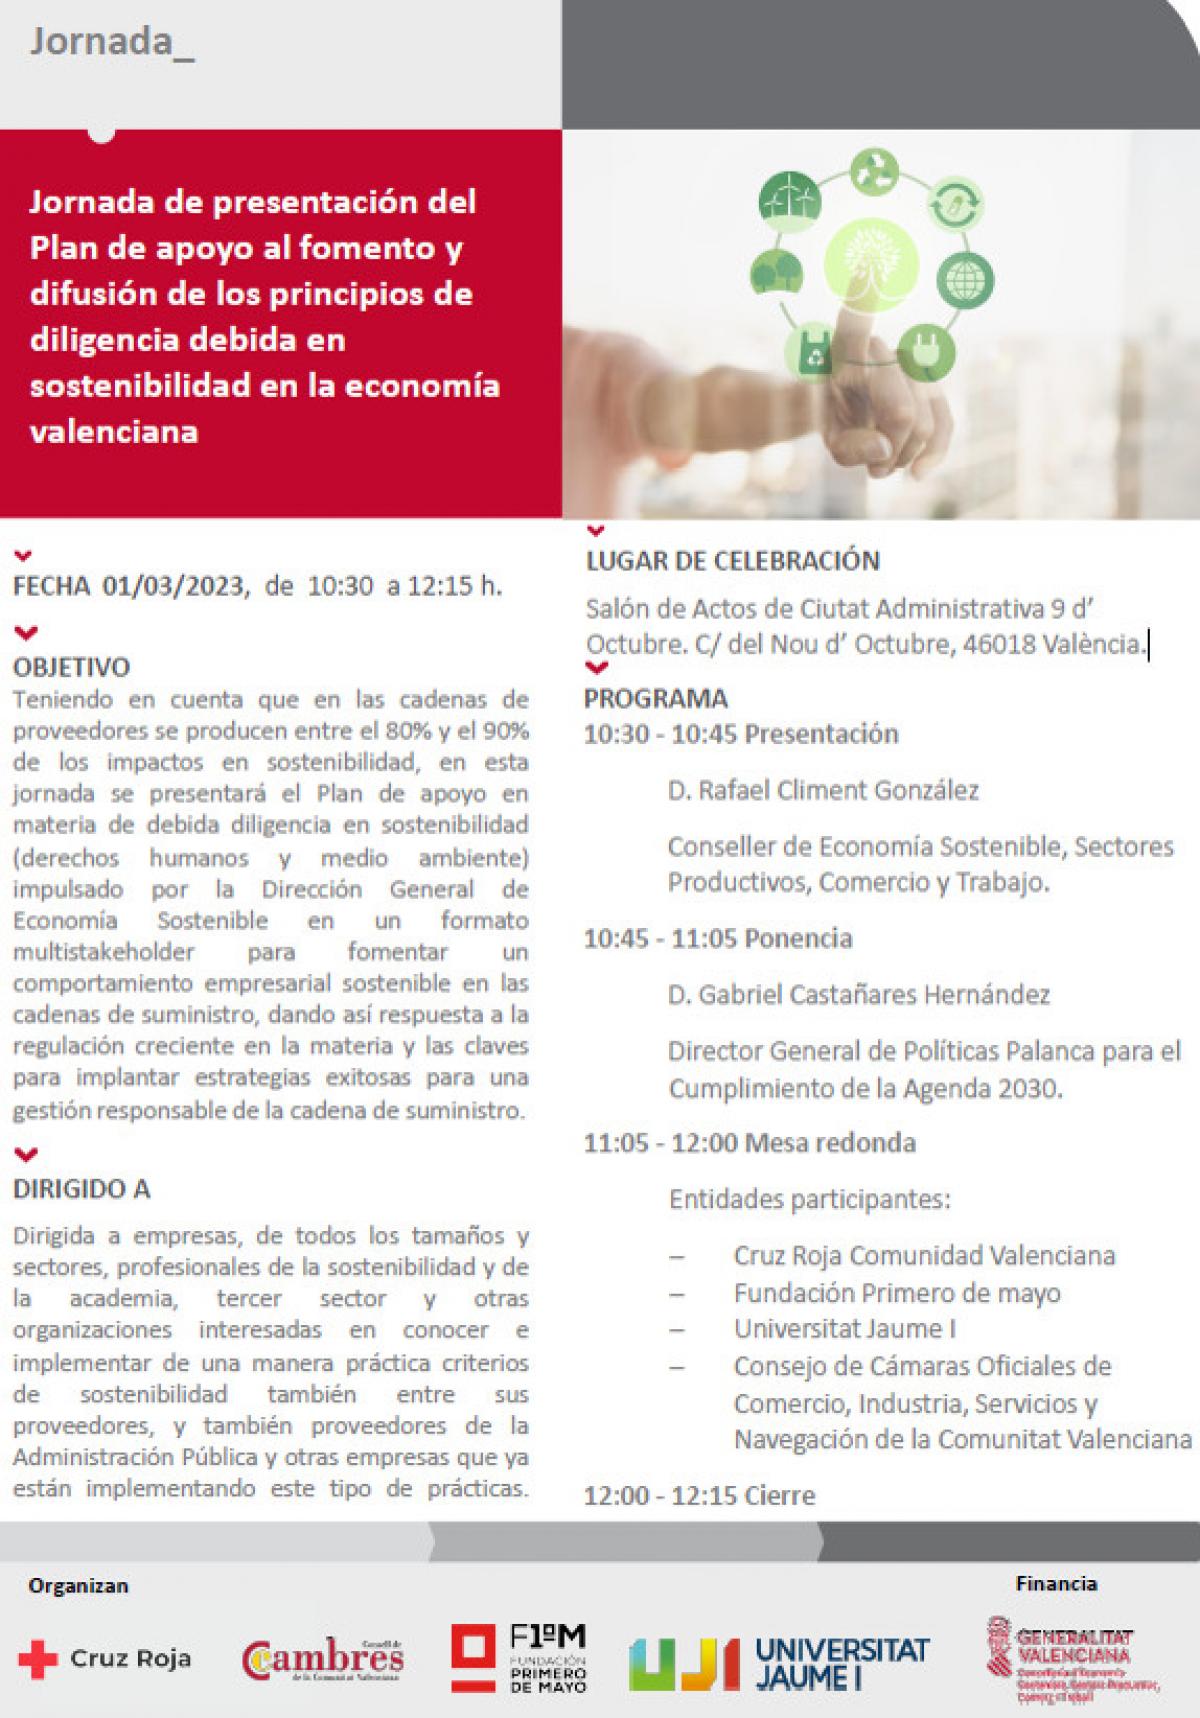 Imagen del programa de la Jornada de presentación del Plan de apoyo al fomento y difusión de los principios de diligencia debida en sostenibilidad en la economía valenciana